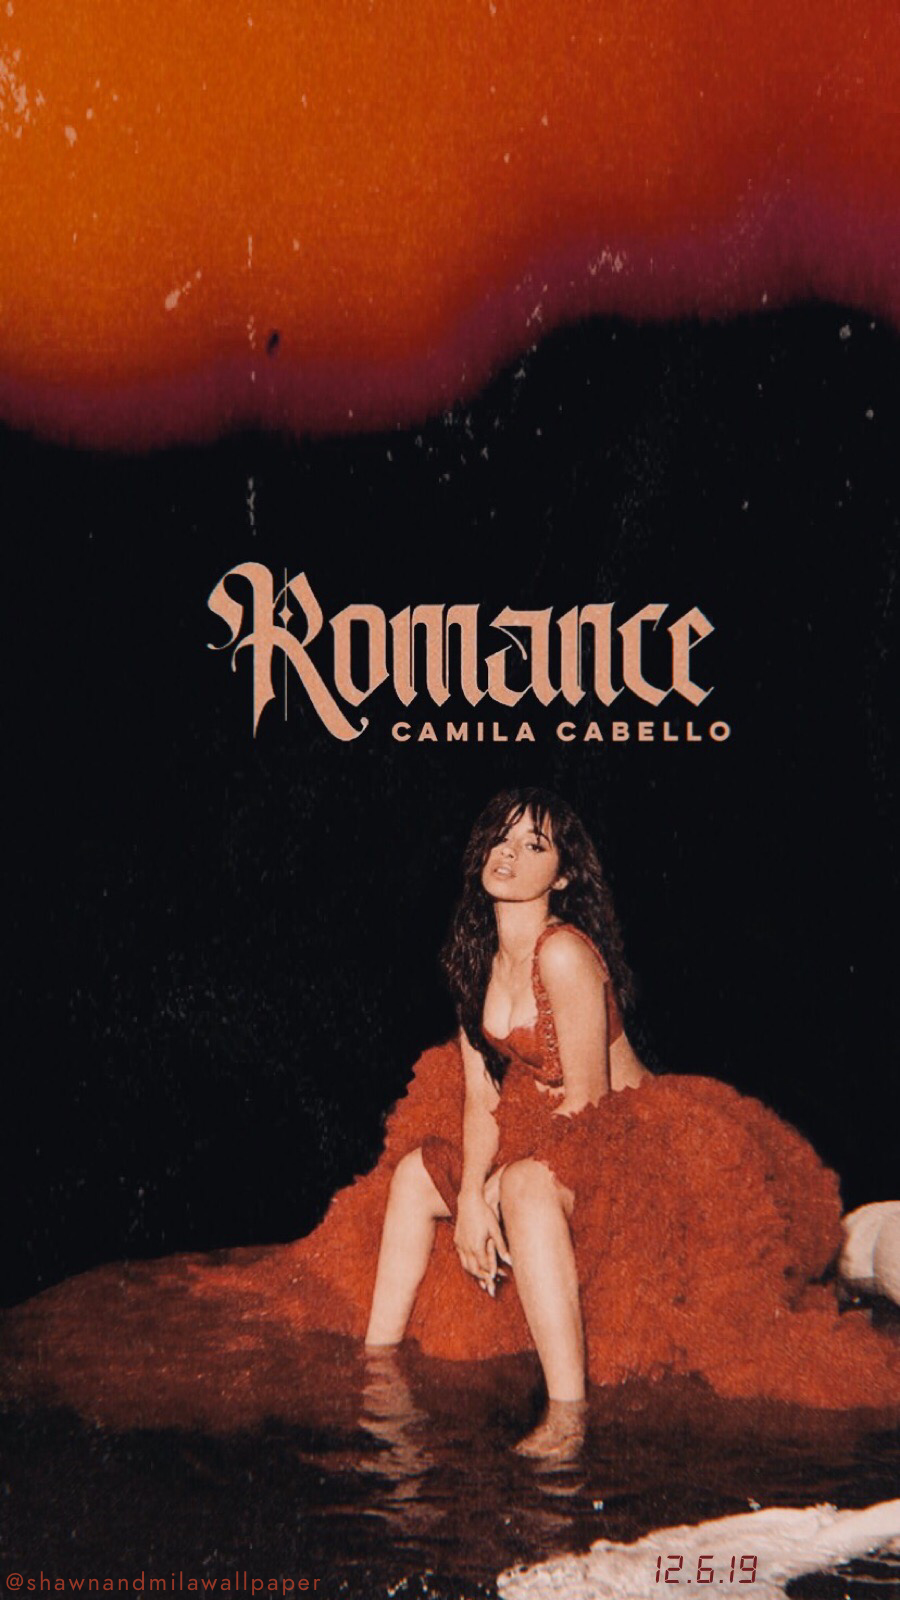 Camila Cabello Lock Screen romance album cover em 2020. Camila